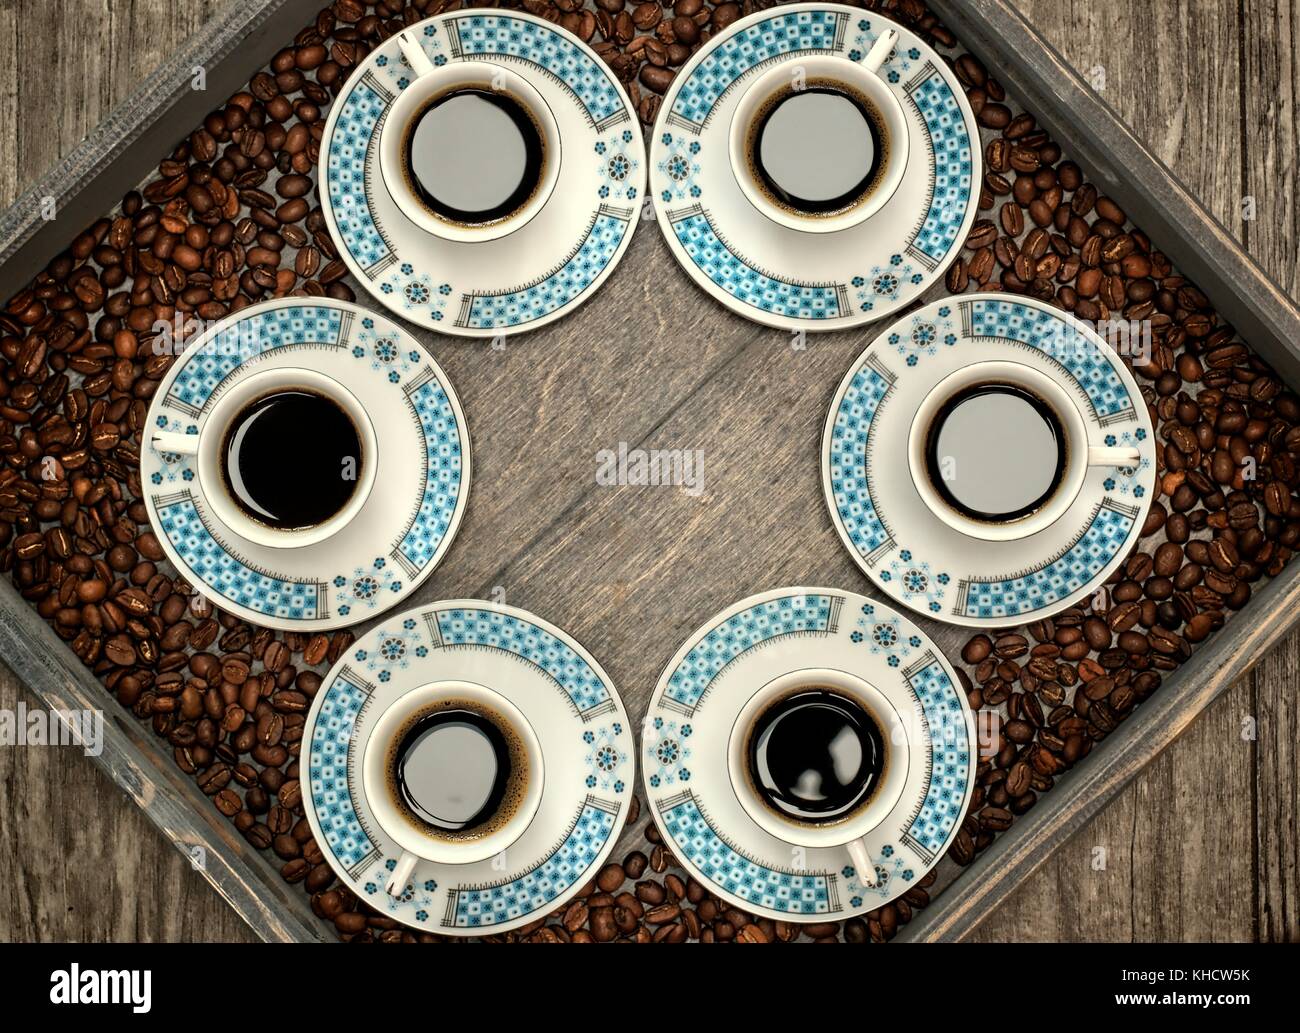 Becher mit Kaffee, Muster- und Designkonzept - sechs Tassen Kaffee auf einer hölzernen Fach. Stockfoto